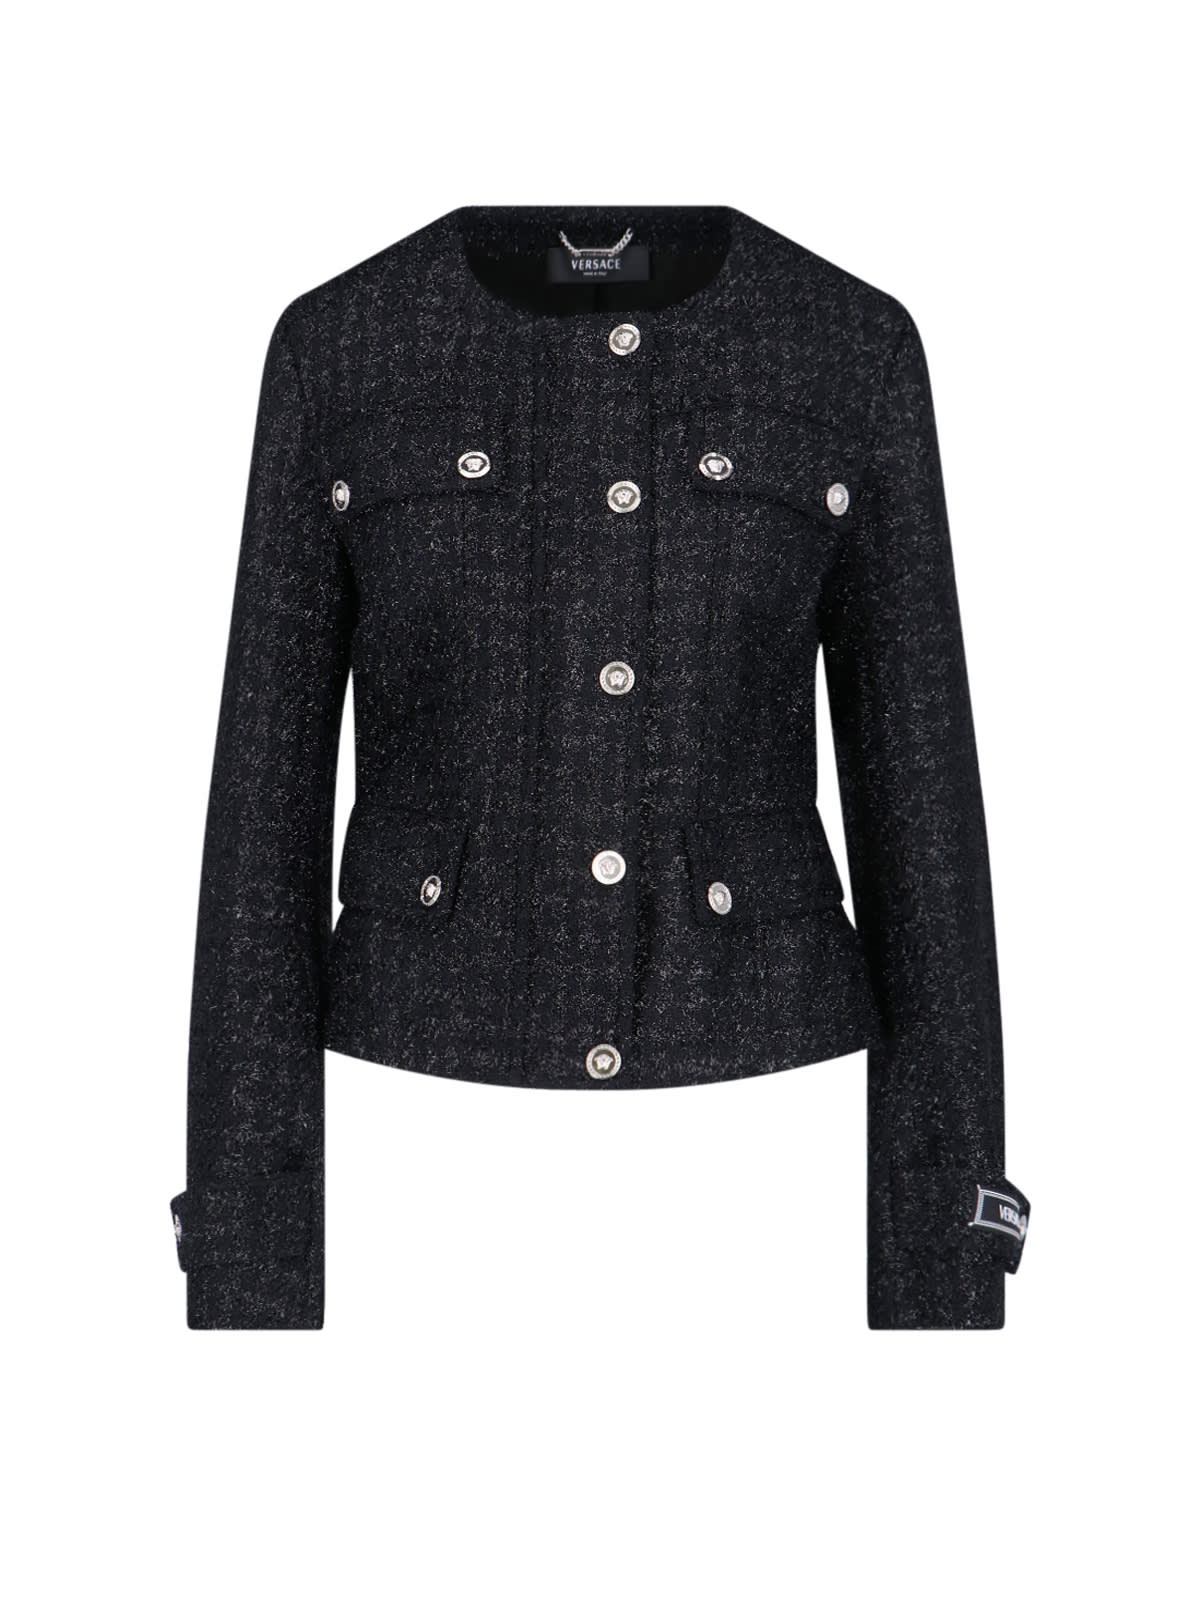 versace black virgin wool blend jacket